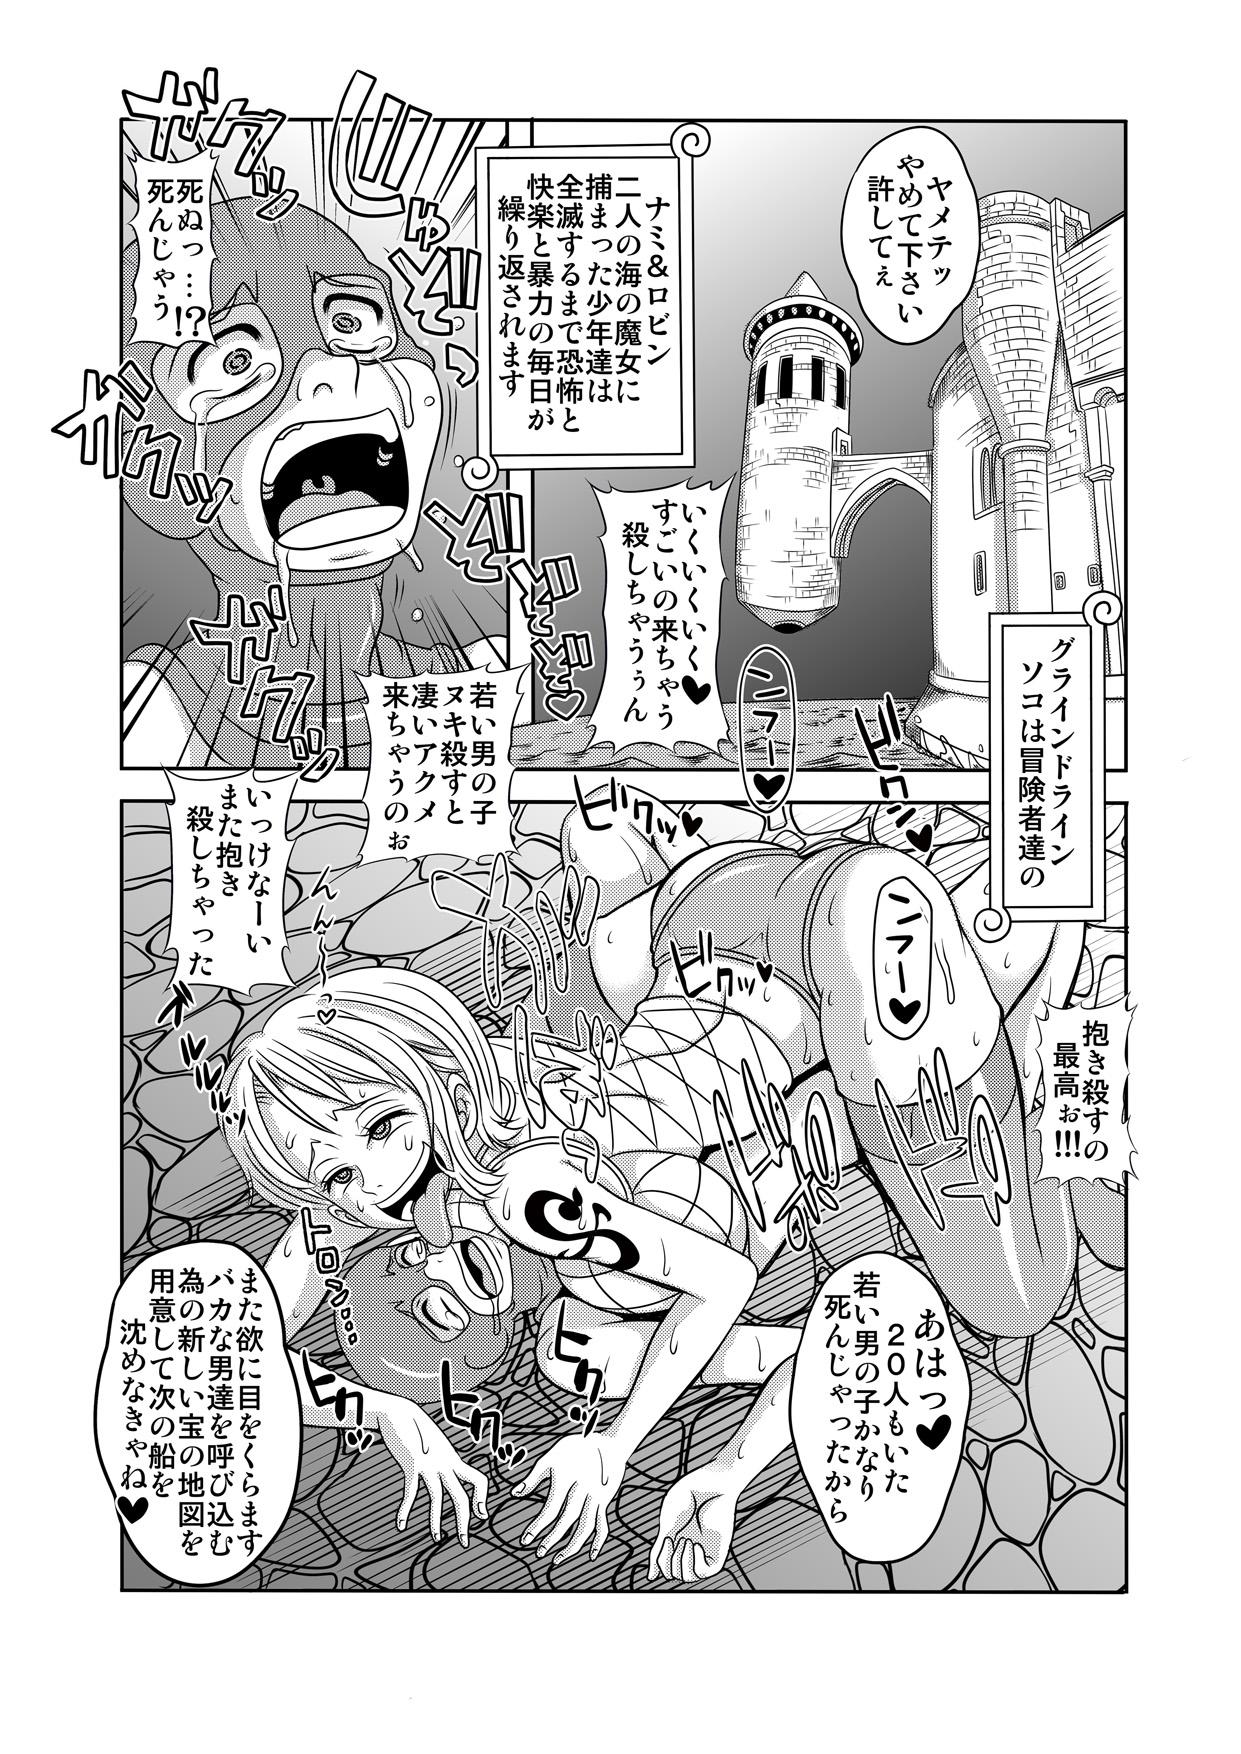 Home "Nukinuki no Mi" no Nouryokusha 5 - Shinshou Seishounen Juujigun - One piece Gay Orgy - Page 46